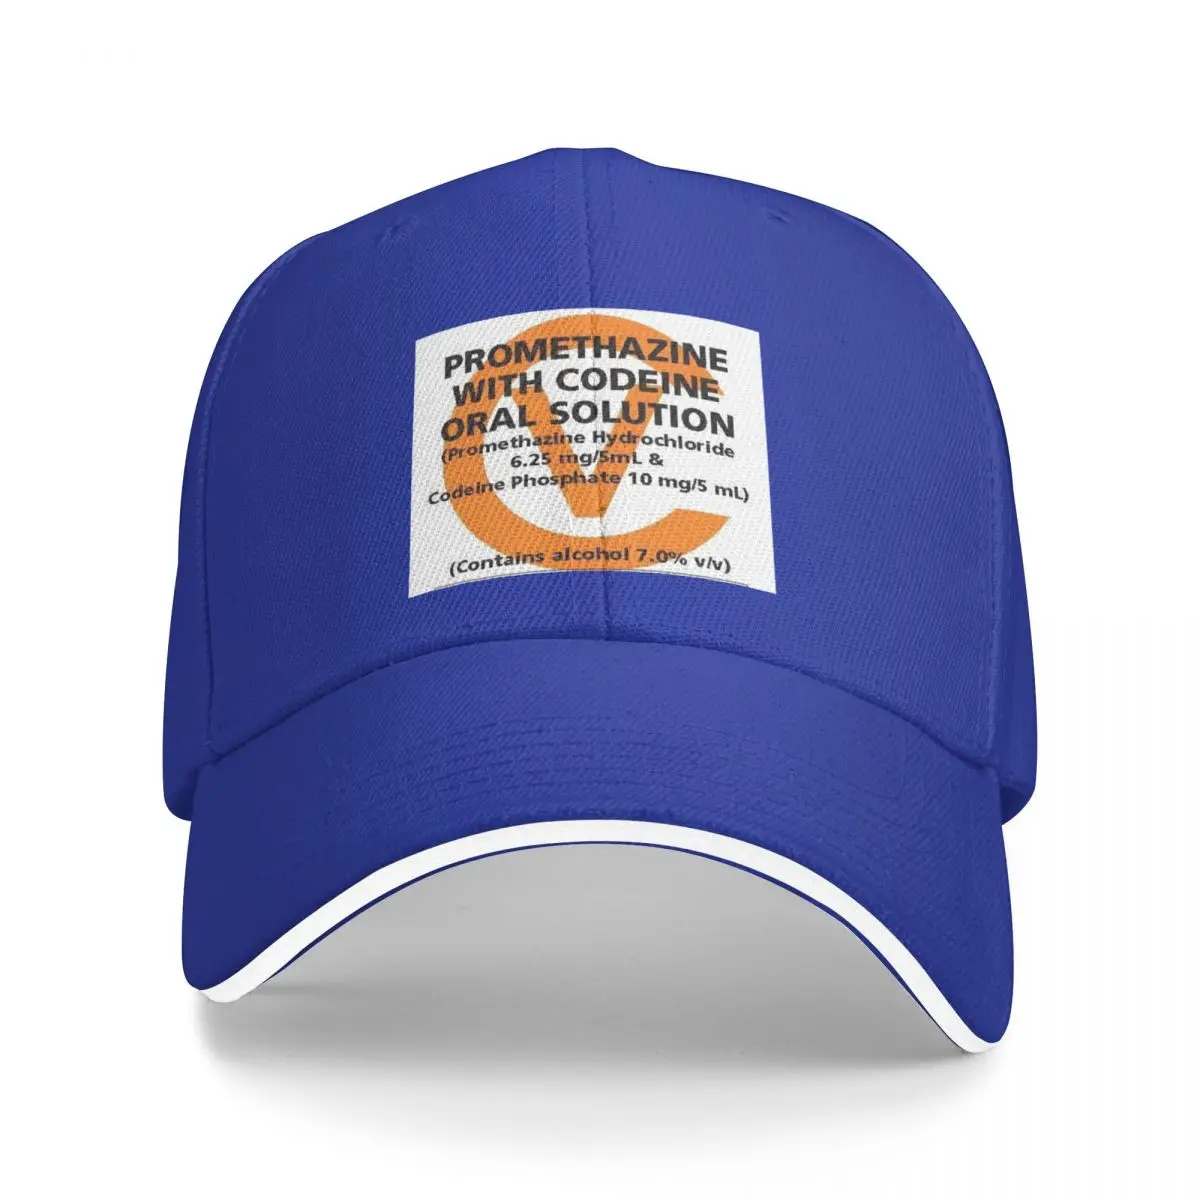 Большая бейсболка Wockhardt Label, пляжные шляпы, дизайнерская шляпа, женская мужская кепка